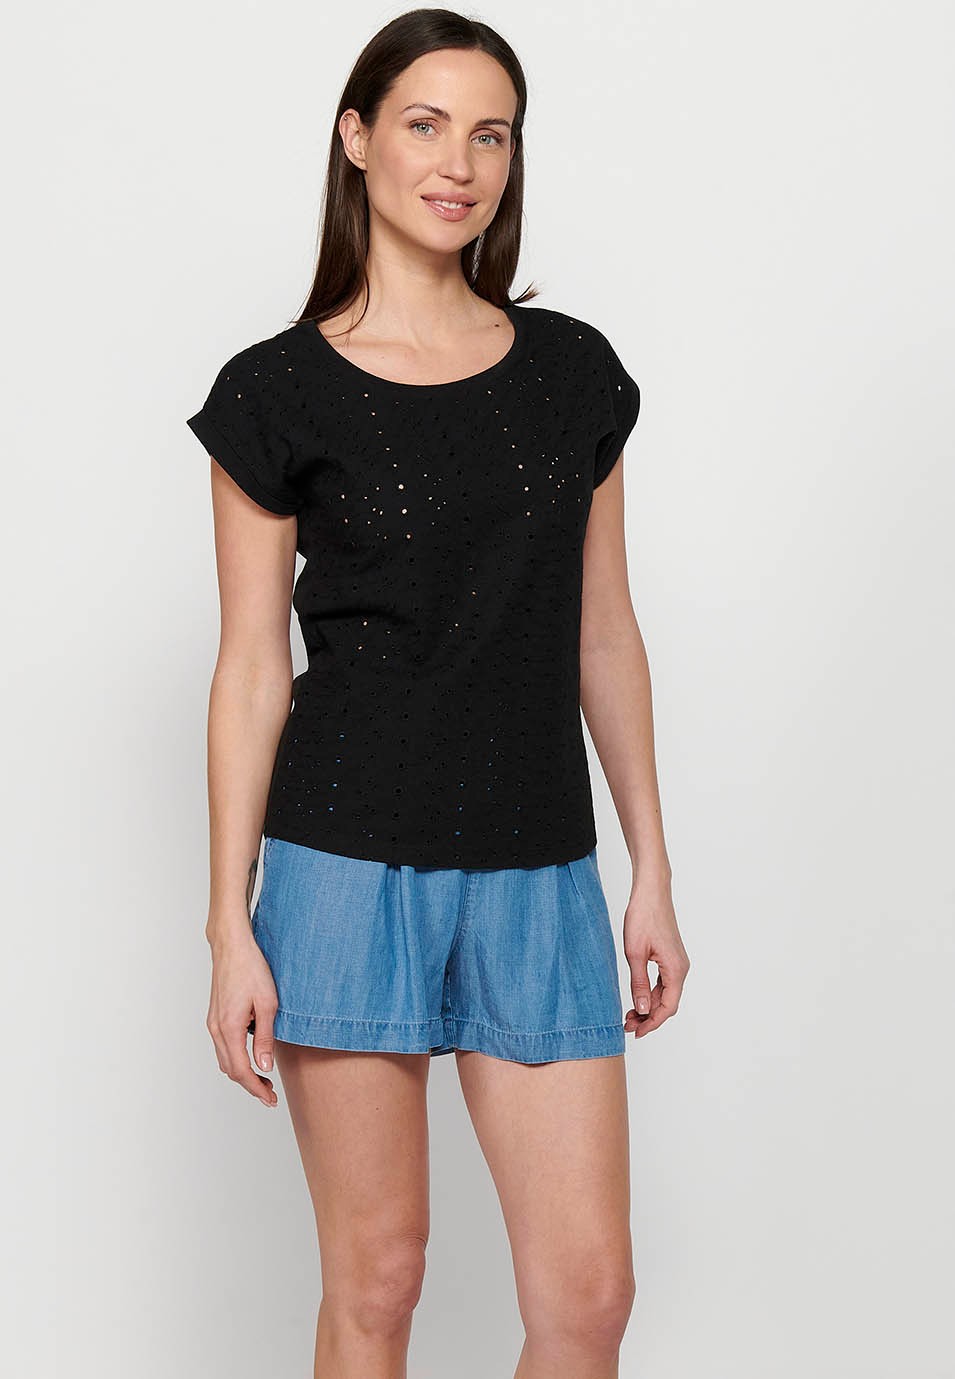 Women's Black Round Neckline Embroidered Short Sleeve T-Shirt